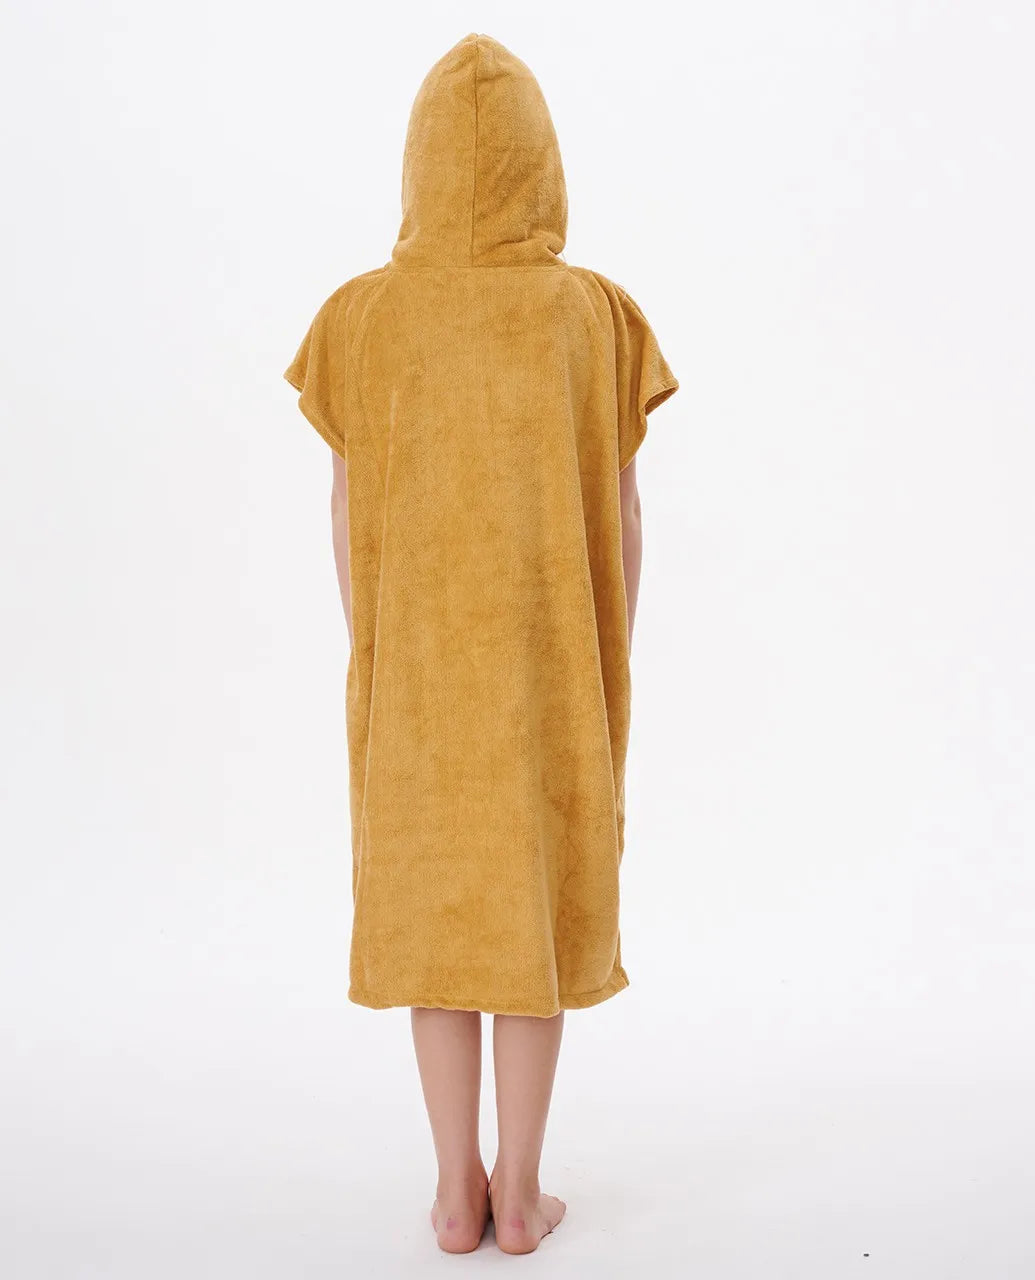 Script Hooded Towel - Girl